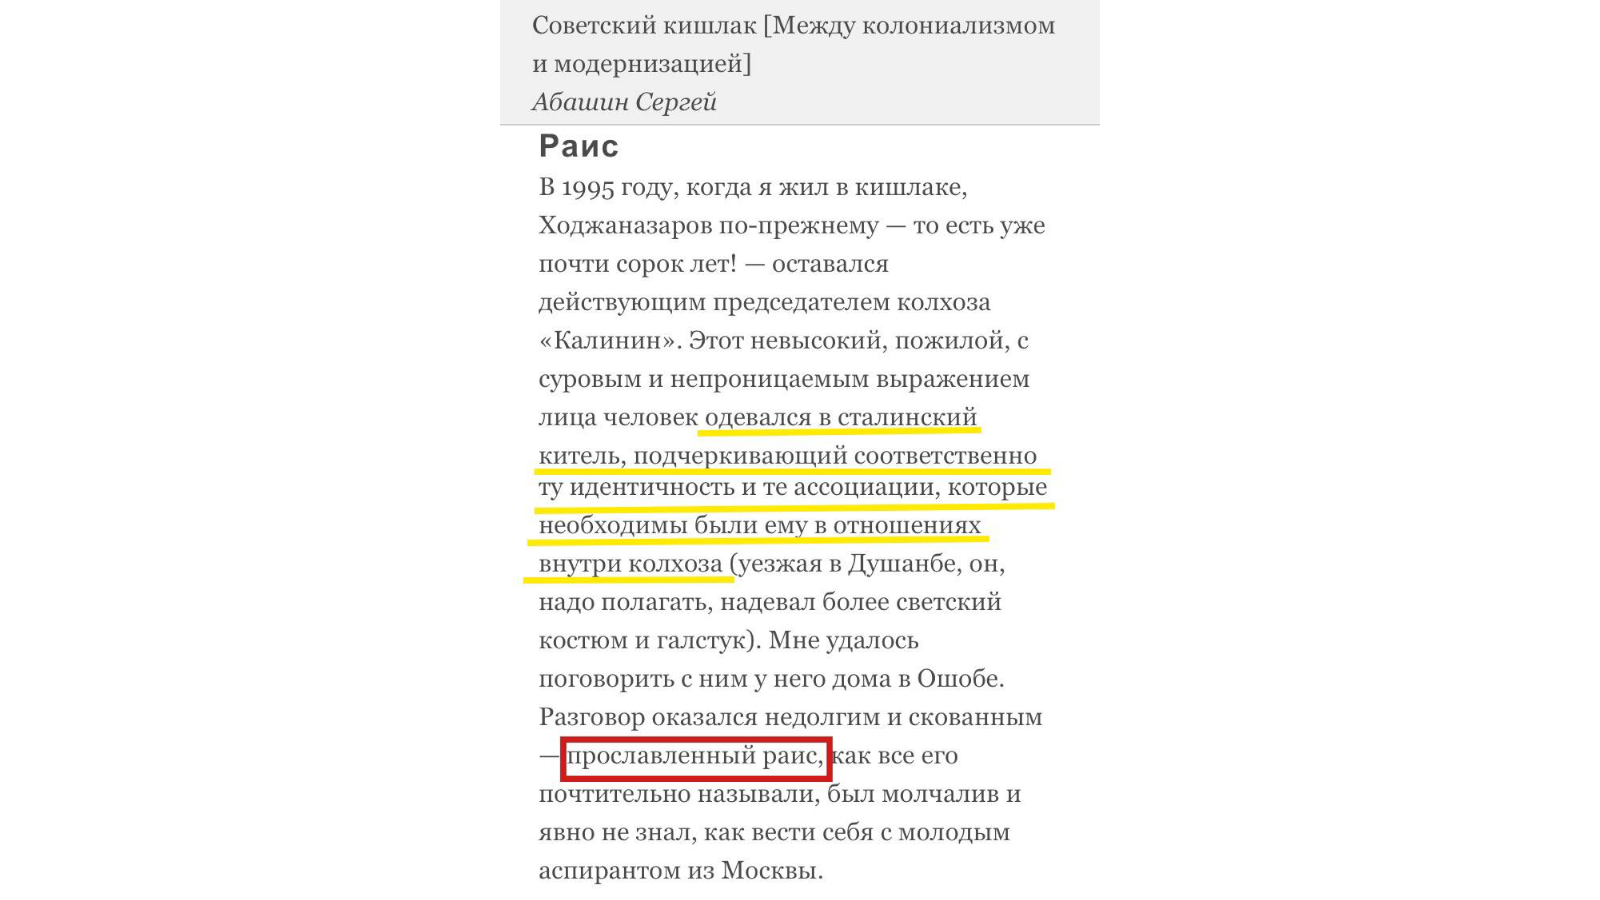 «Закон о раисе»: колхоз под названием Татарстан или страна под названием Татарстан?